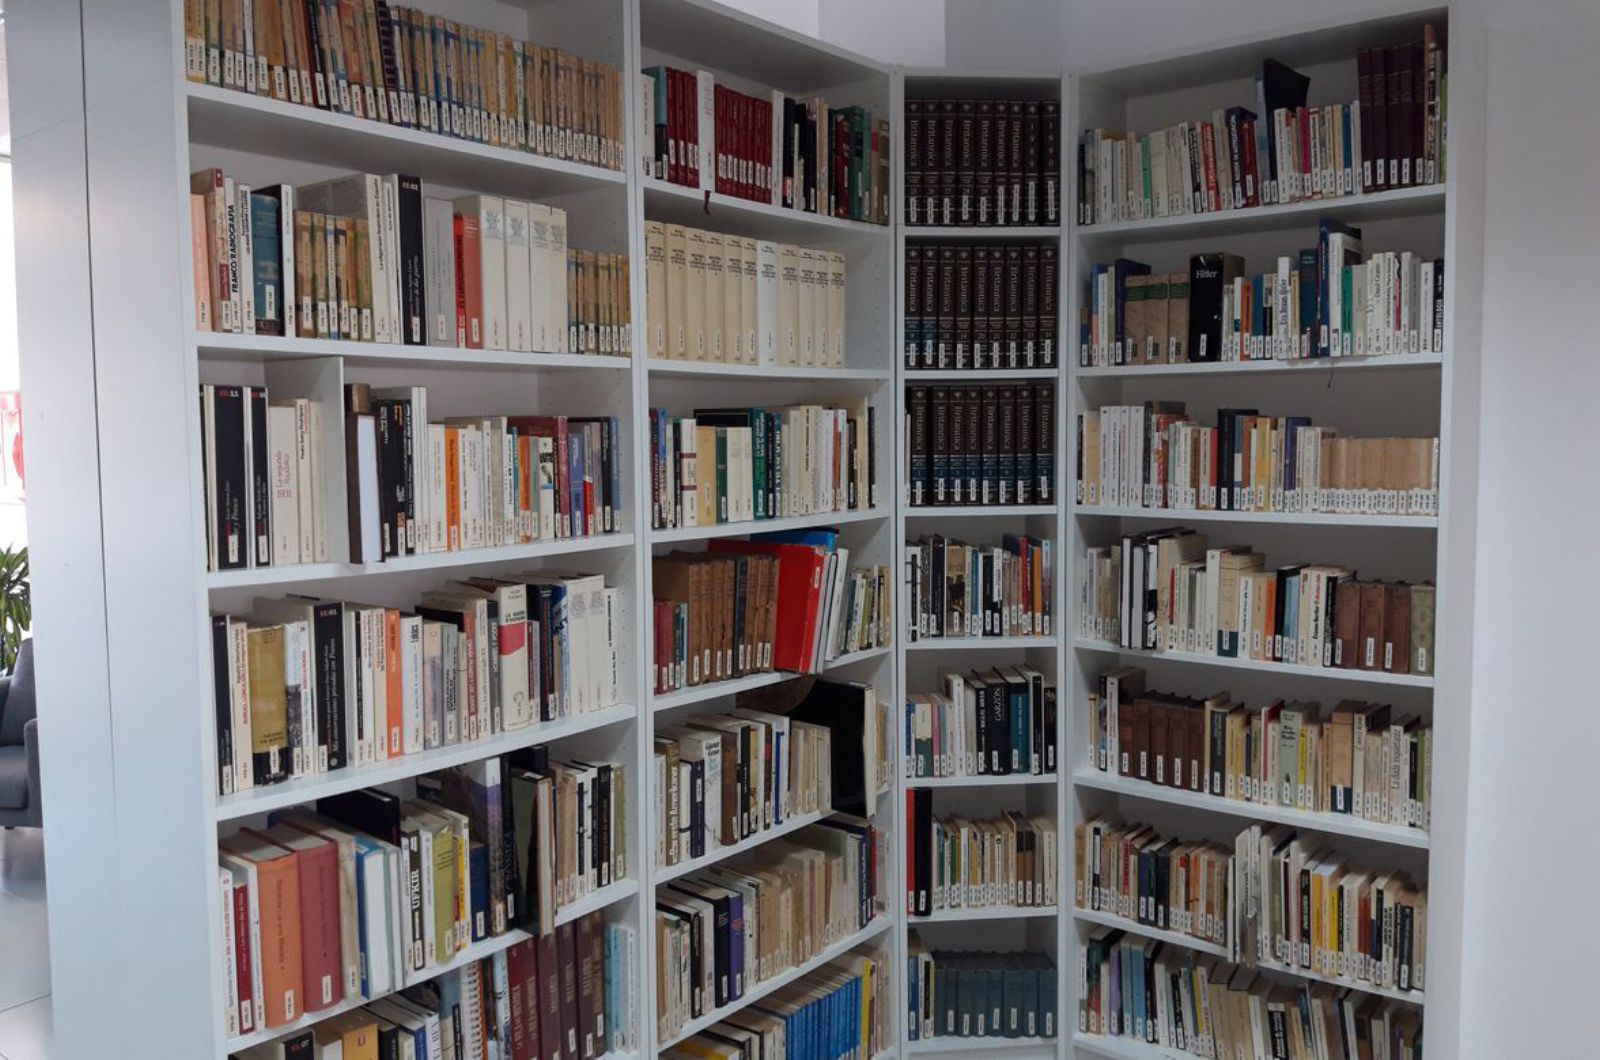 Espacio bibliotecario del archivo. 